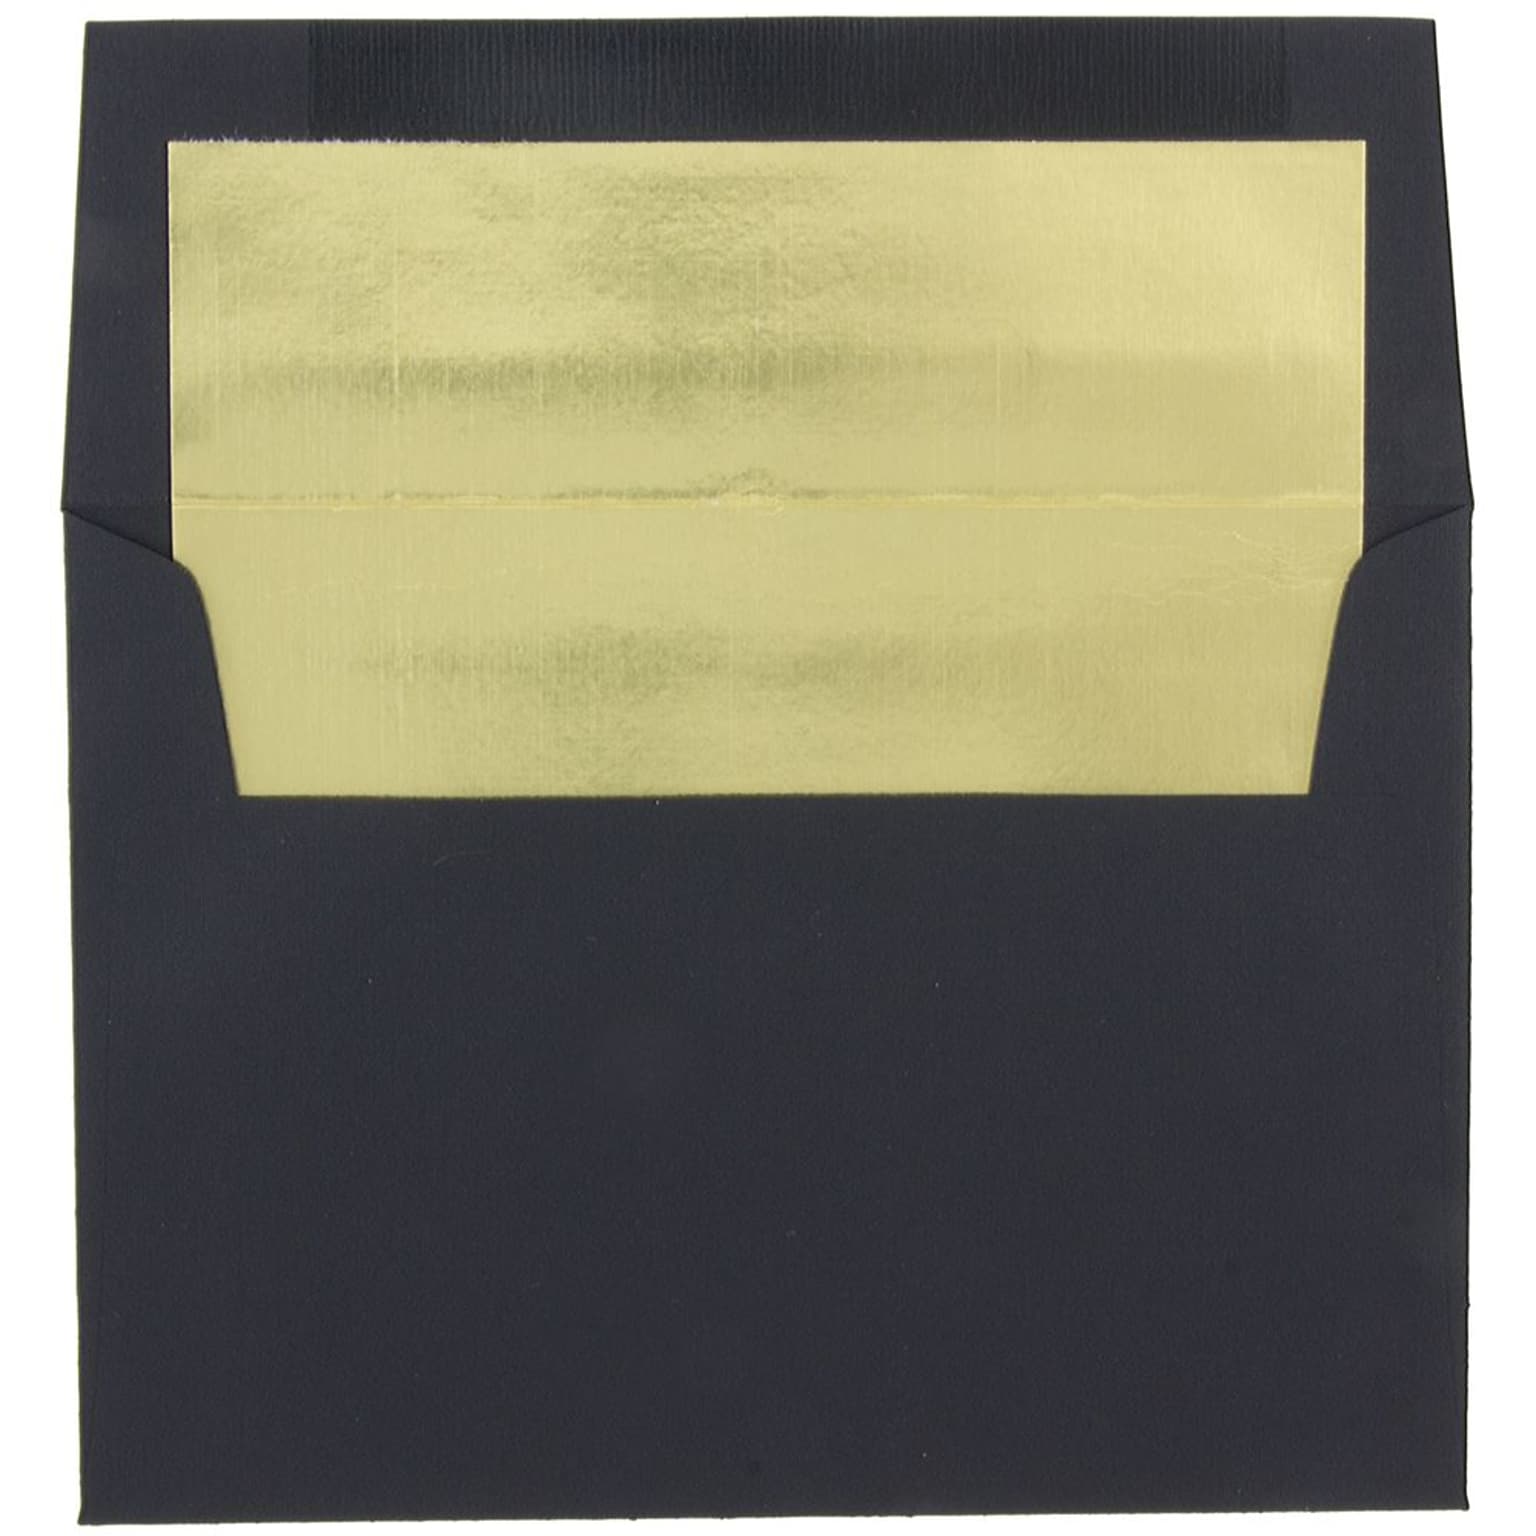 JAM Paper A8 Foil Lined Invitation Envelopes, 5.5 x 8.125, Black Linen with Gold Foil, 50/Pack (3243680BI)